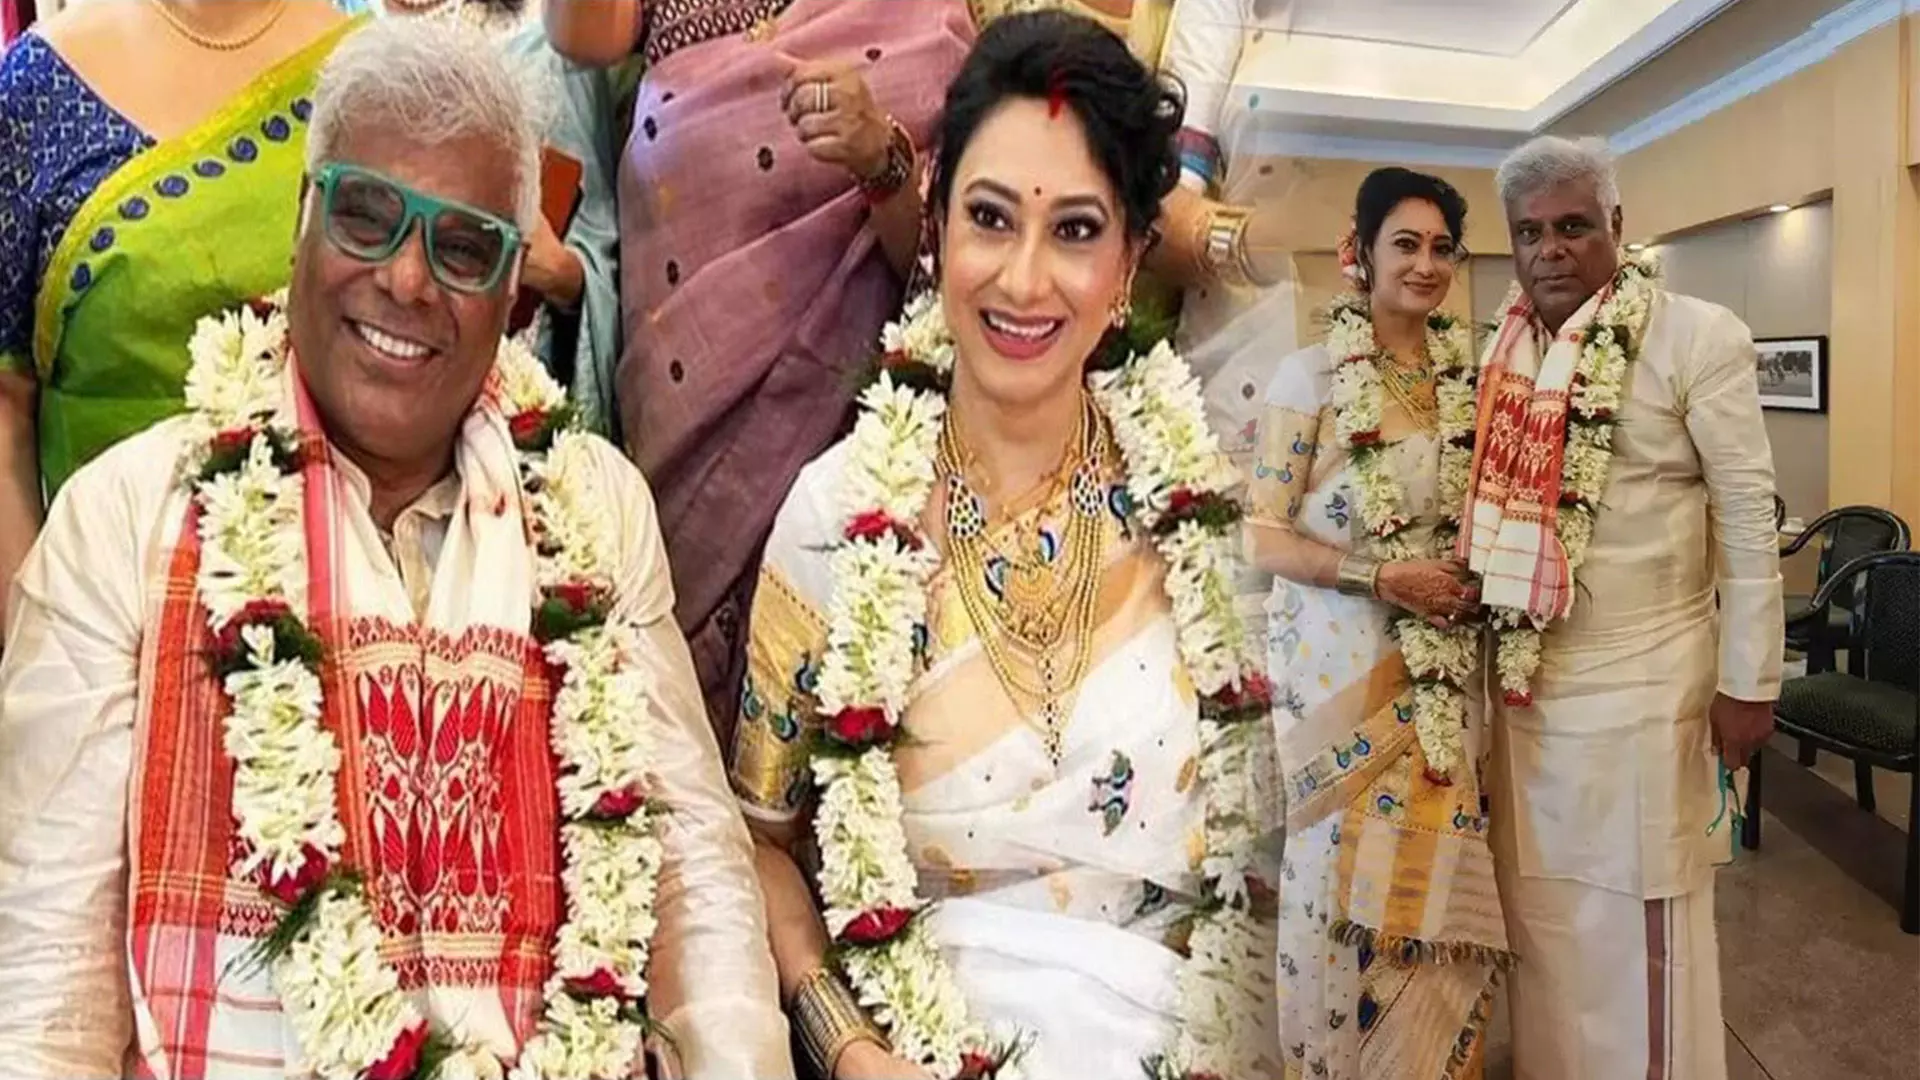 60 साल की उम्र में आशीष विद्यार्थी ने रचाई शादी, जानिए- कौन है  दूसरी पत्नी रुपाली बरुआ? लव स्टोरी को लेकर दिया बड़ा बयान!